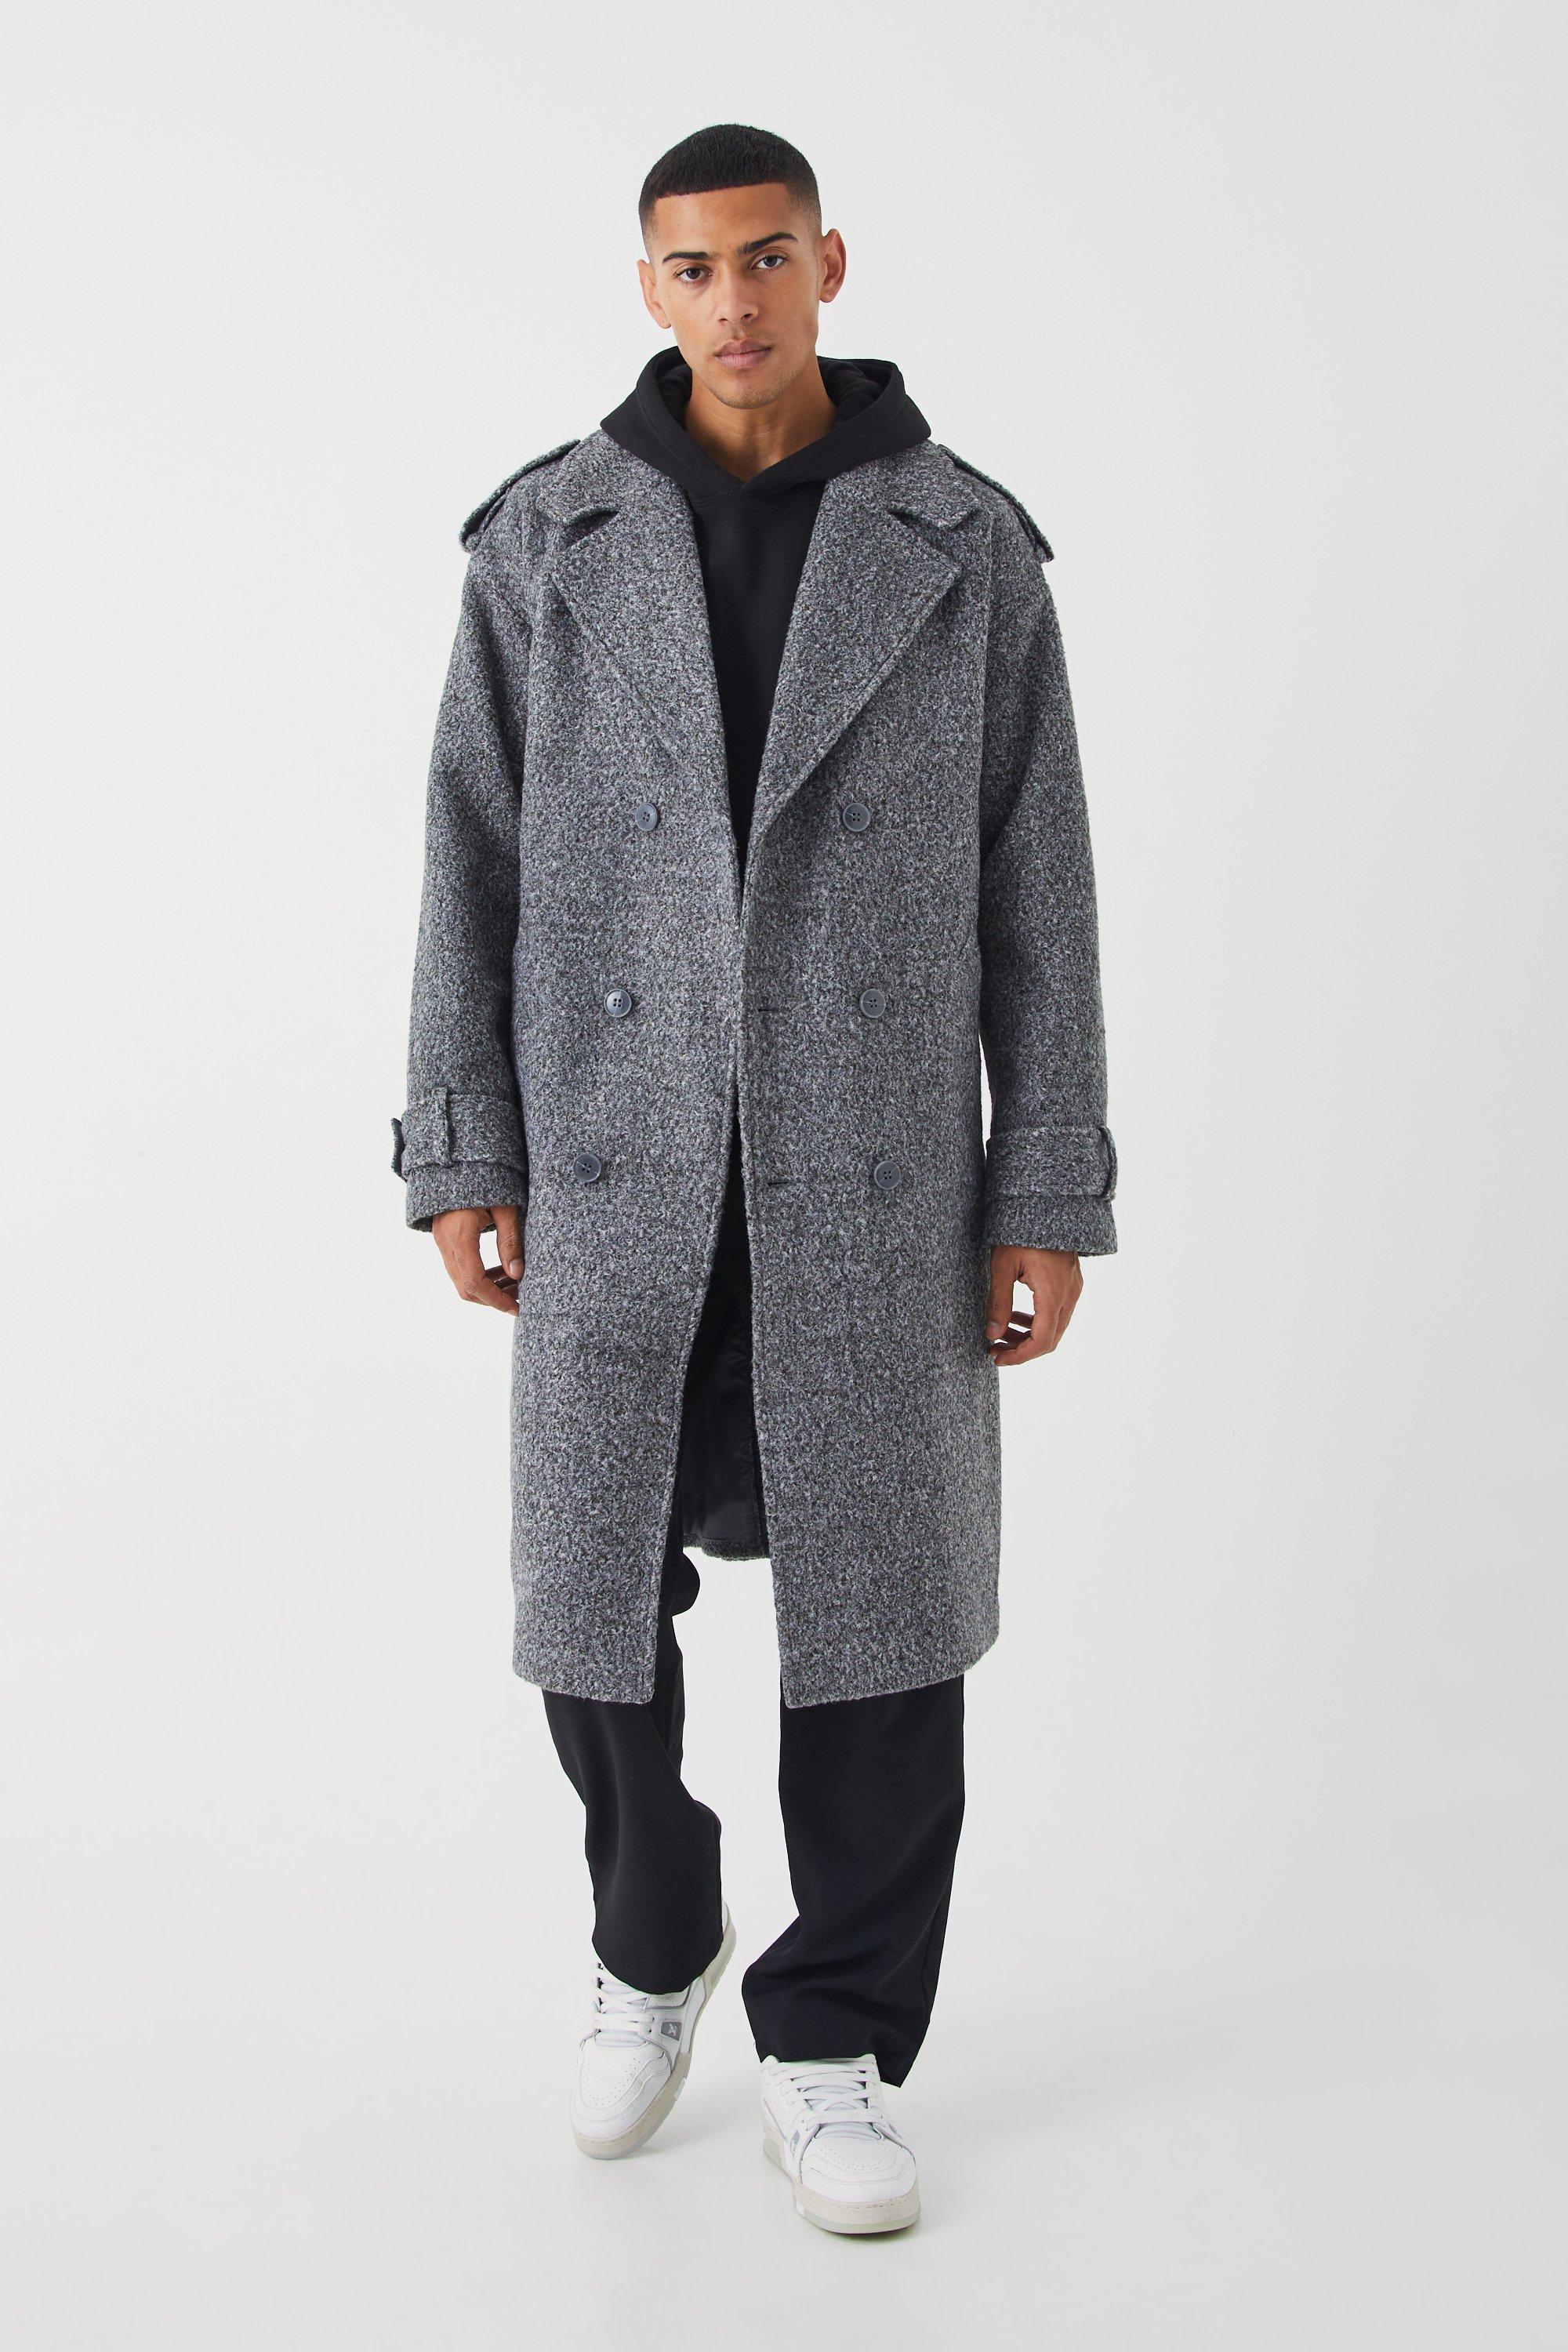 manteau long croisé moucheté homme - gris - s, gris